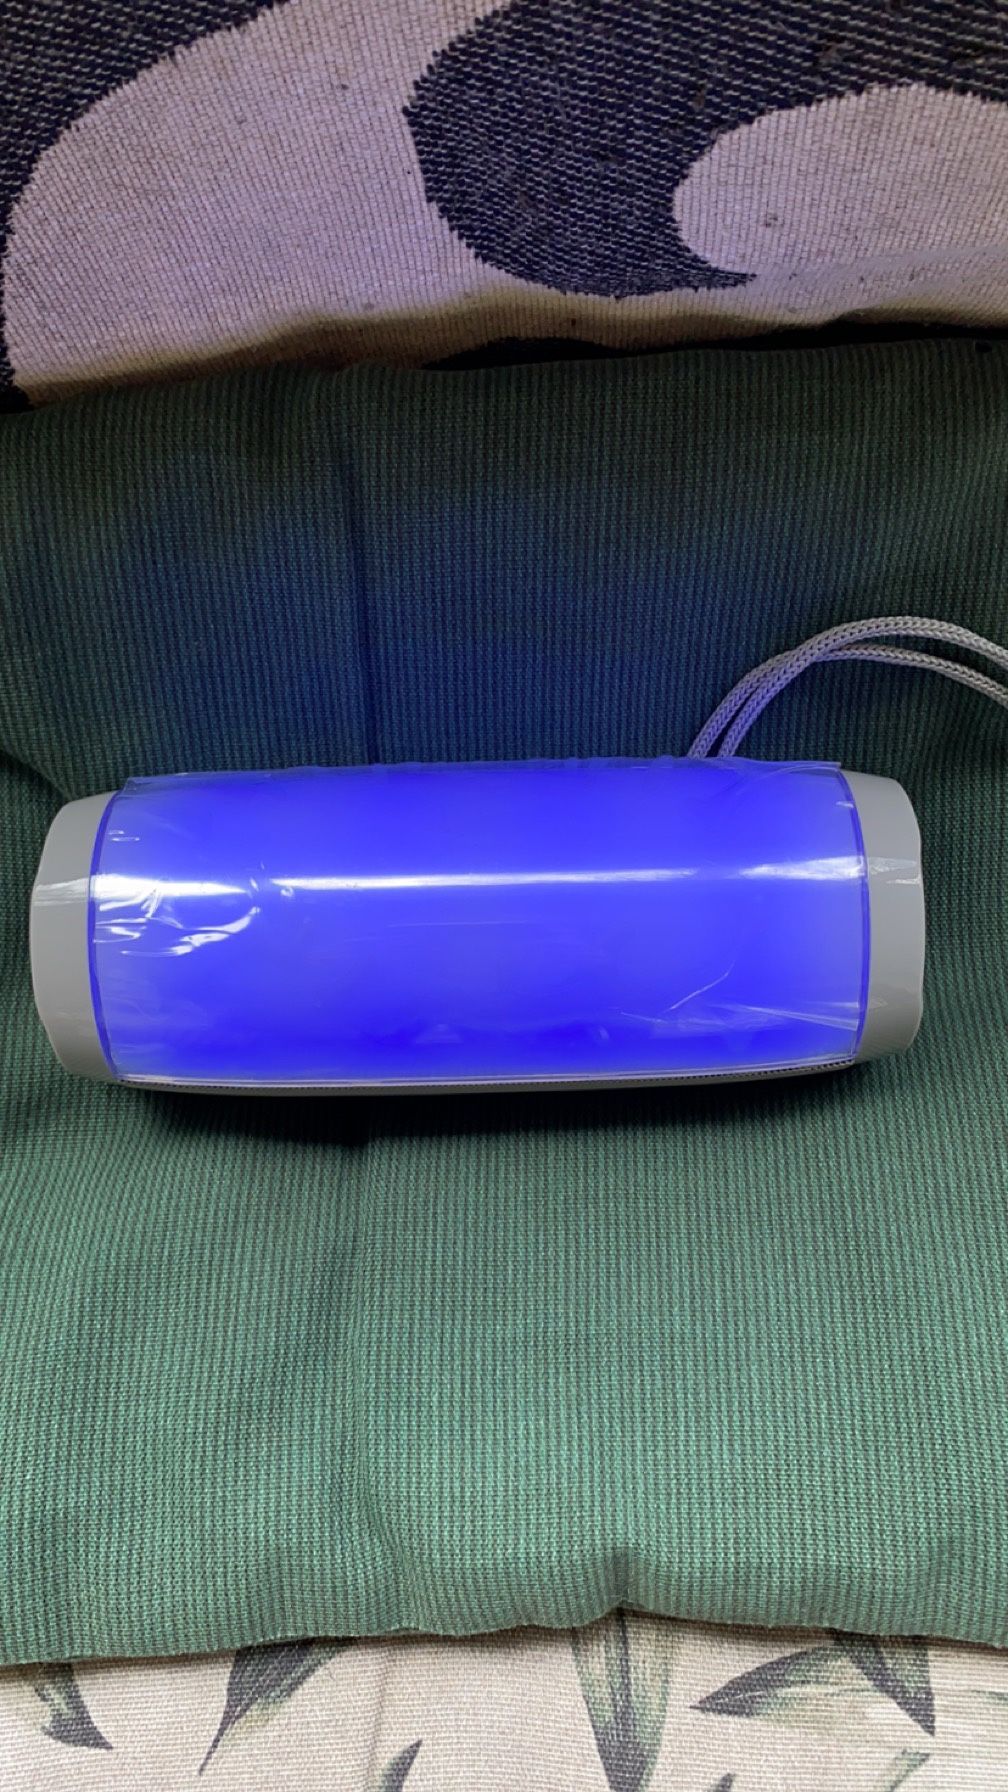 LED Bluetooth Speaker